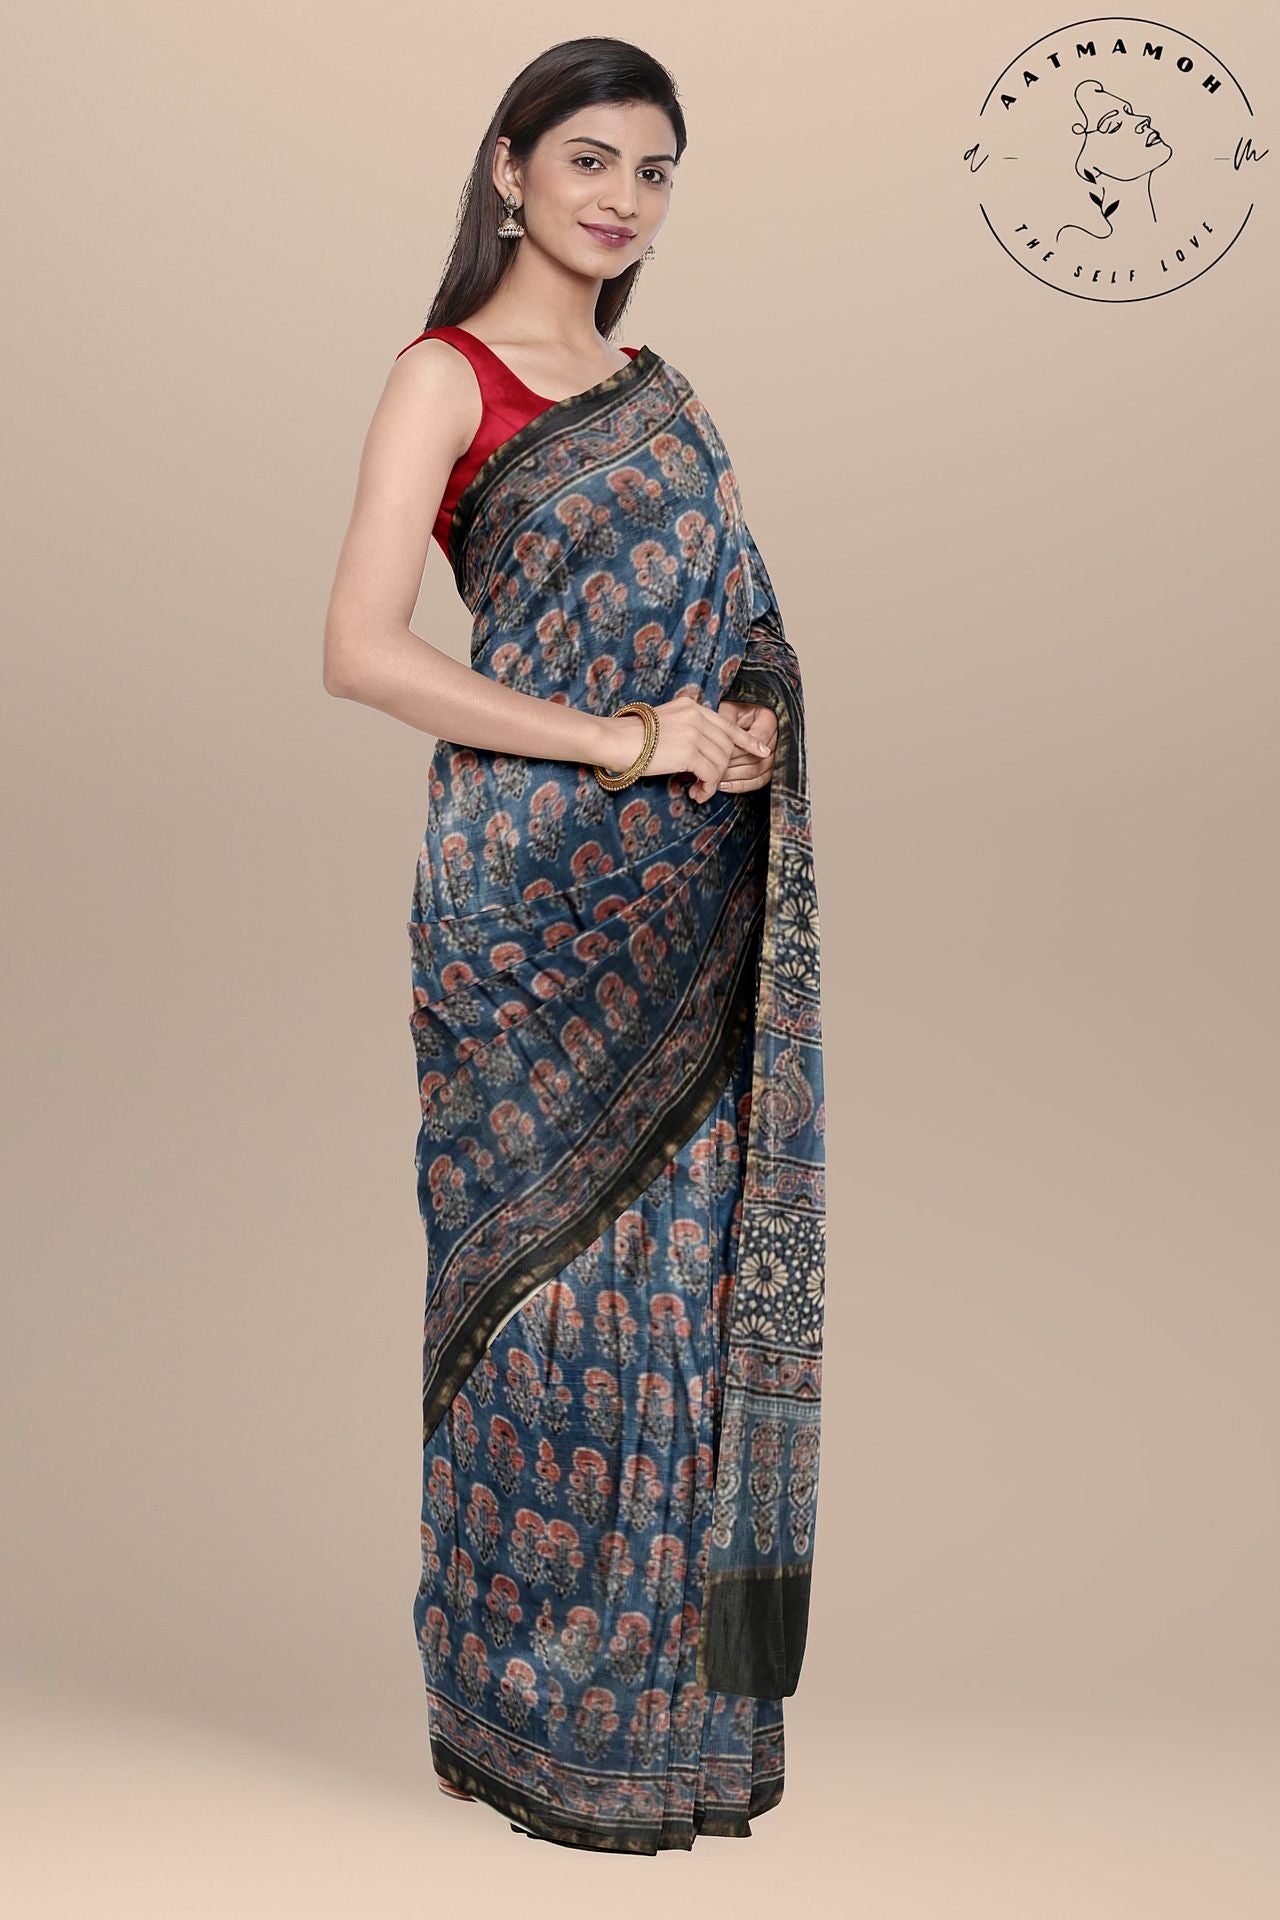 cotton silk sarees - Buy cotton silk sarees Online Starting at